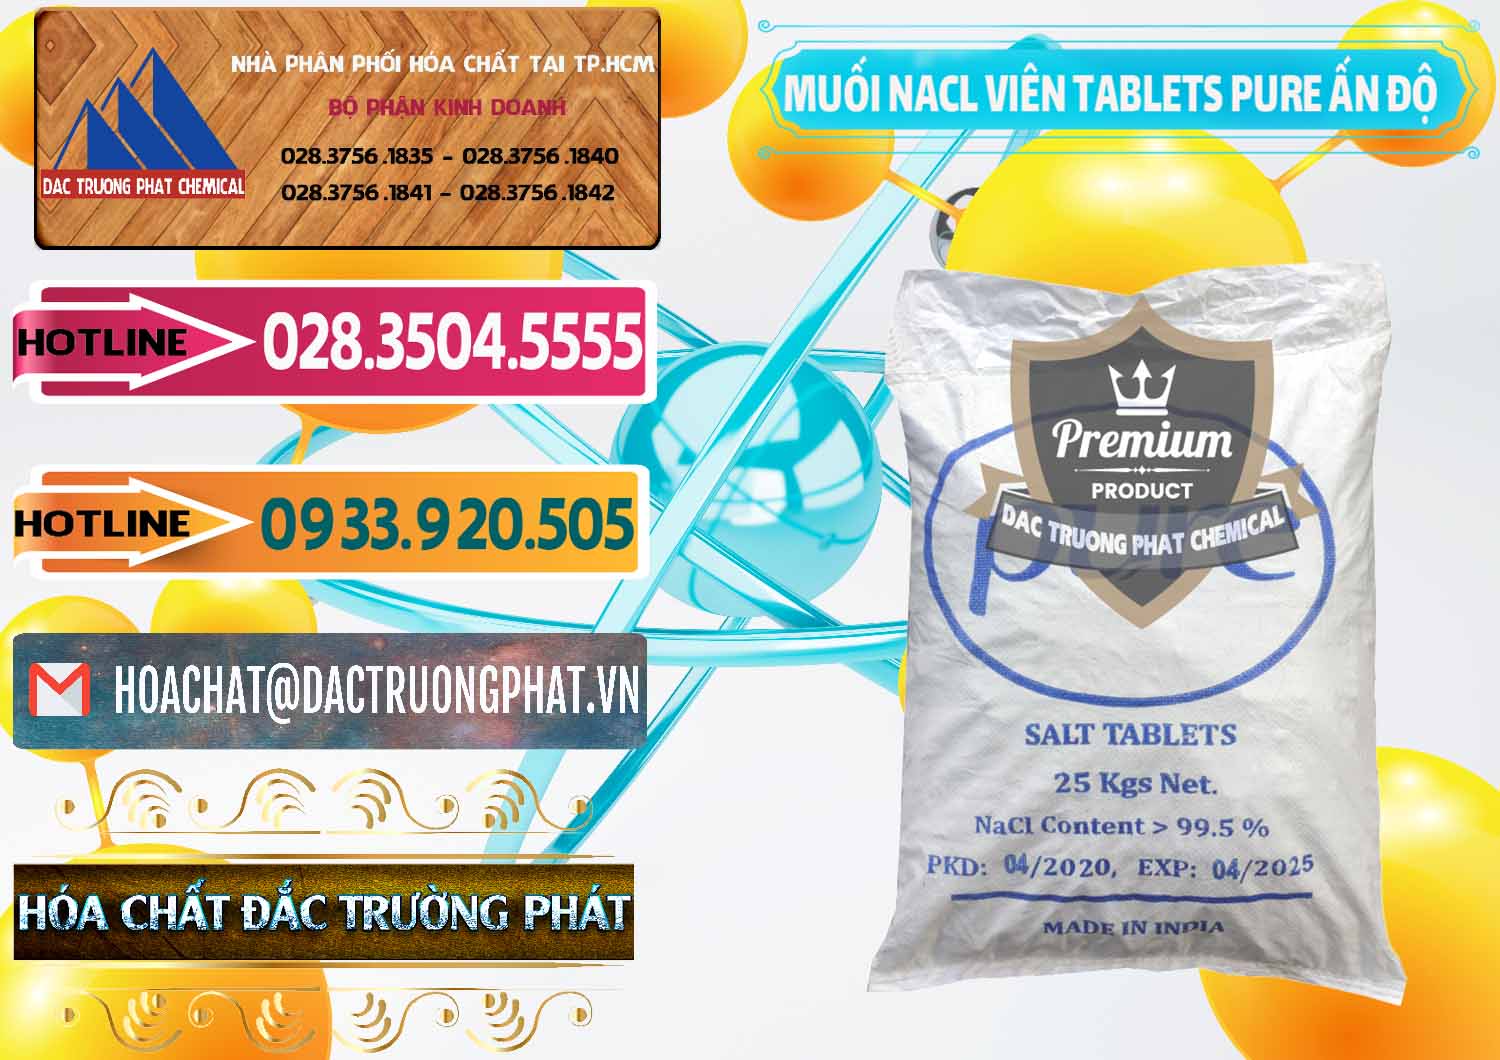 Nơi chuyên nhập khẩu & bán Muối NaCL – Sodium Chloride Dạng Viên Tablets Pure Ấn Độ India - 0294 - Đơn vị chuyên nhập khẩu _ phân phối hóa chất tại TP.HCM - dactruongphat.vn